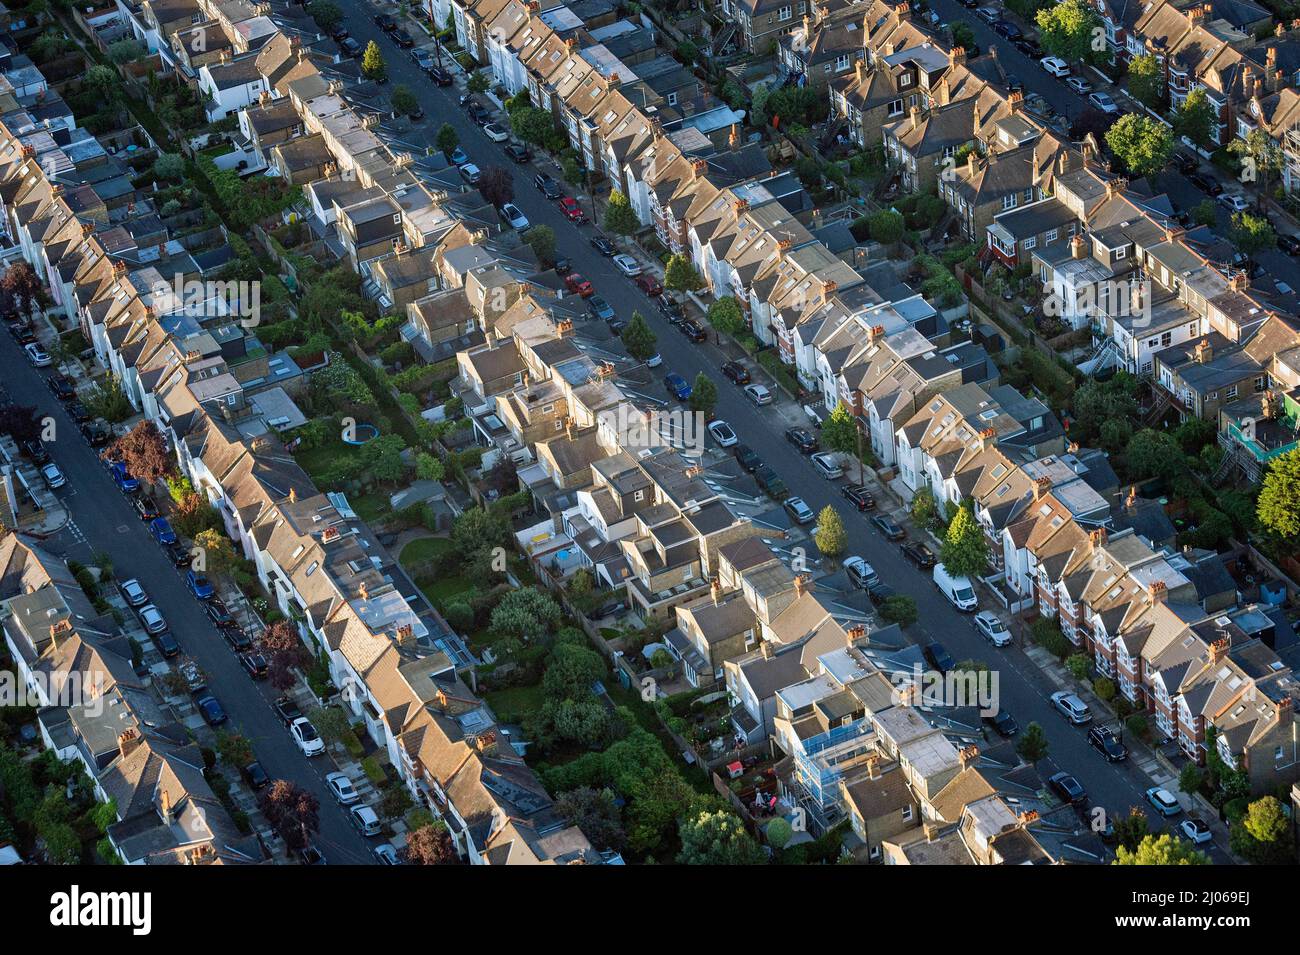 Foto di archivio datata 13/08/17 di una vista aerea di case terrazzate nel sud-ovest di Londra, come forte crescita dei prezzi delle case, l'aumento dei tassi di interesse e la più ampia impennata dei costi di vita stanno colpendo la fiducia della gente, ha detto la Building Societies Association. Foto Stock